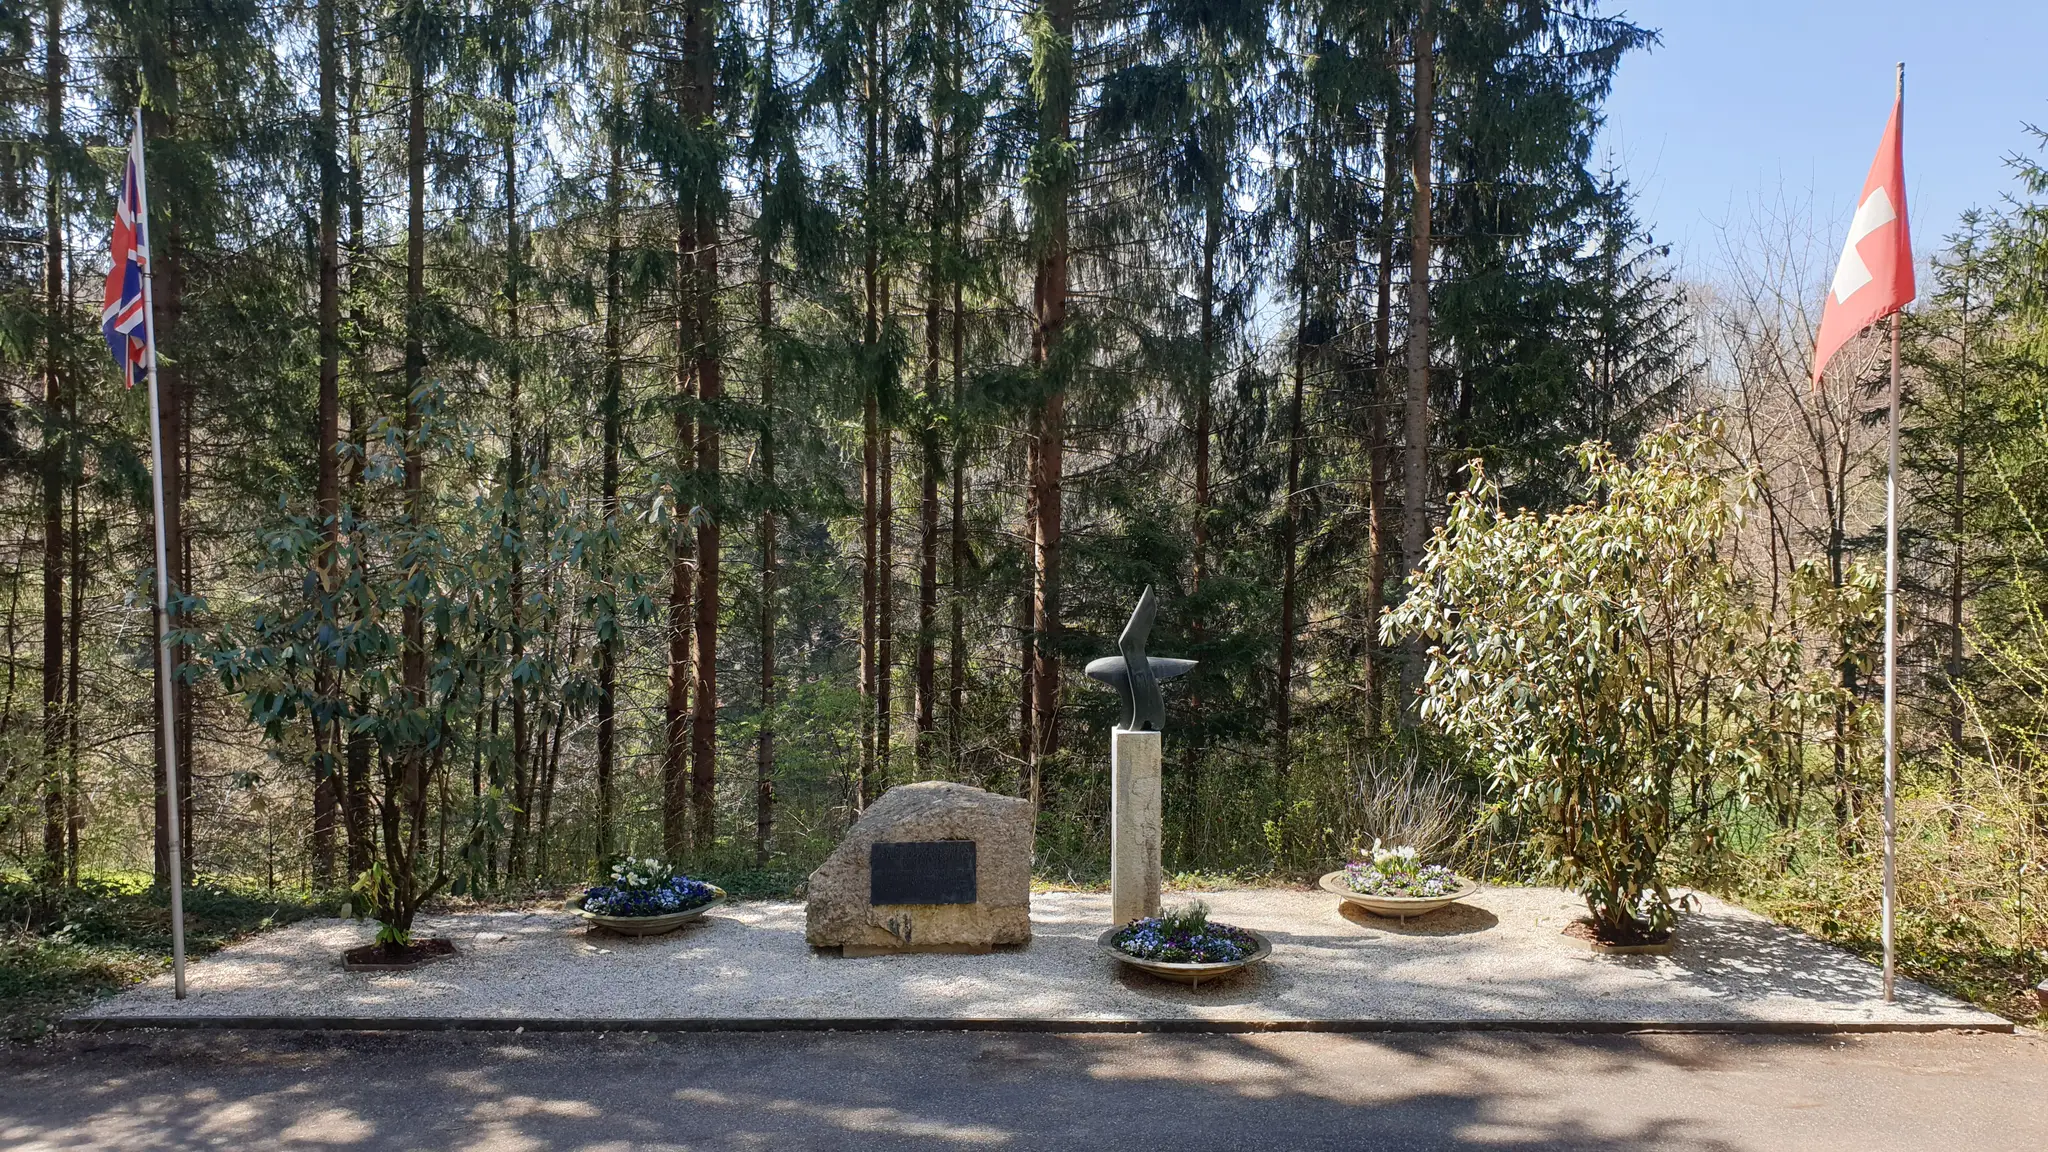 Swiss Air Crash Site Memorial